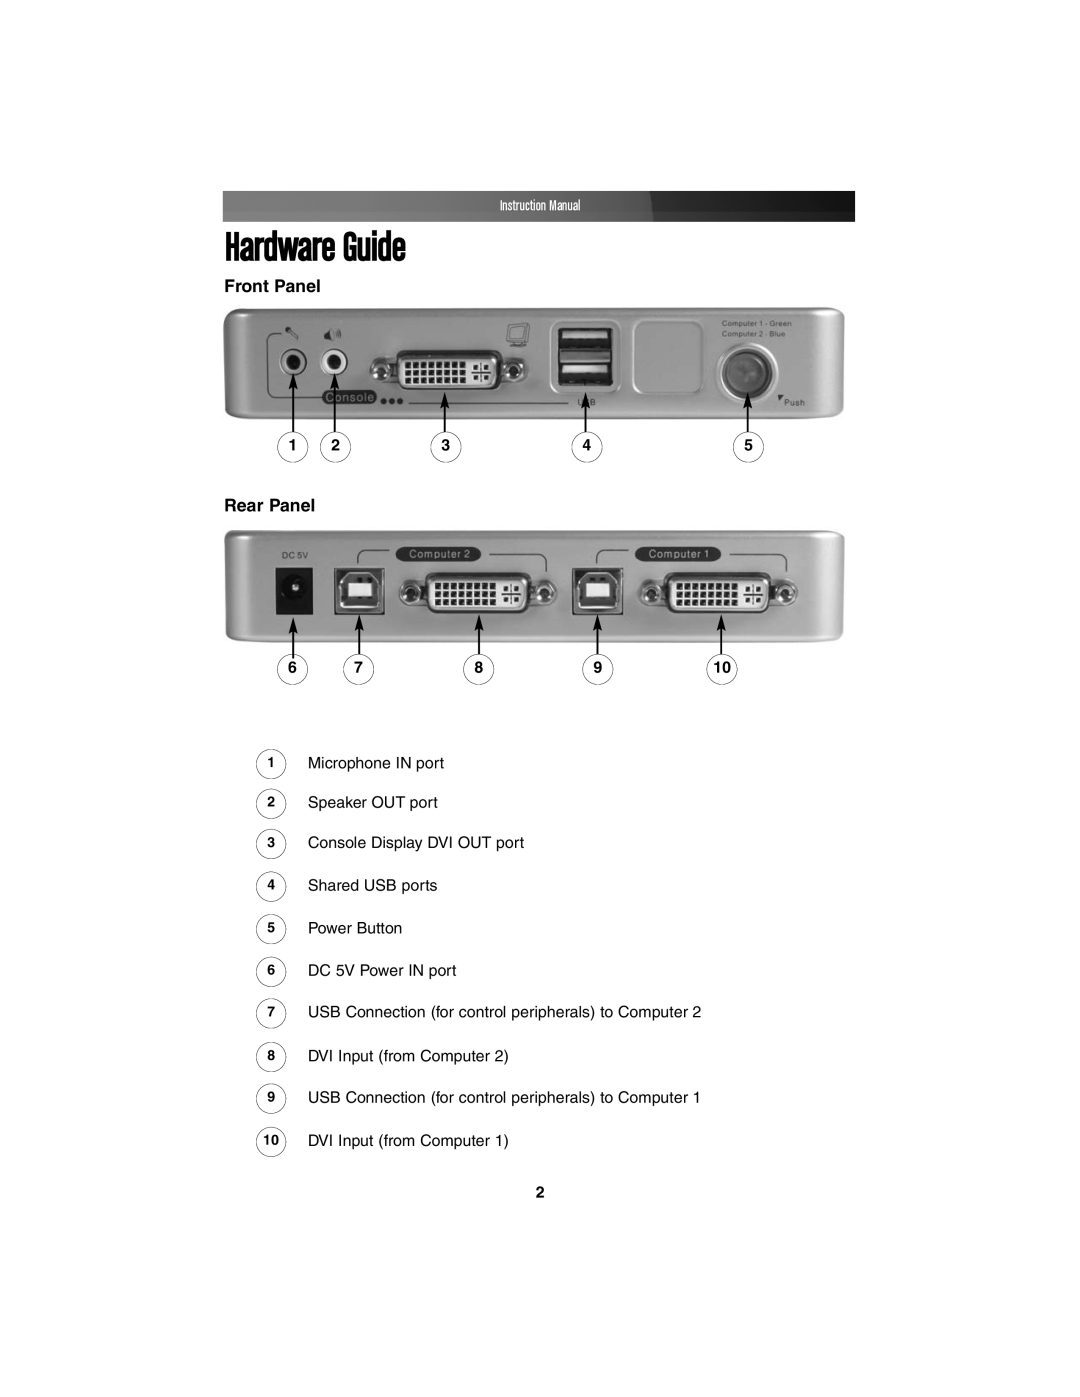 StarTech.com SV211KDVI instruction manual Hardware Guide, Front Panel, Rear Panel, Instruction Manual 